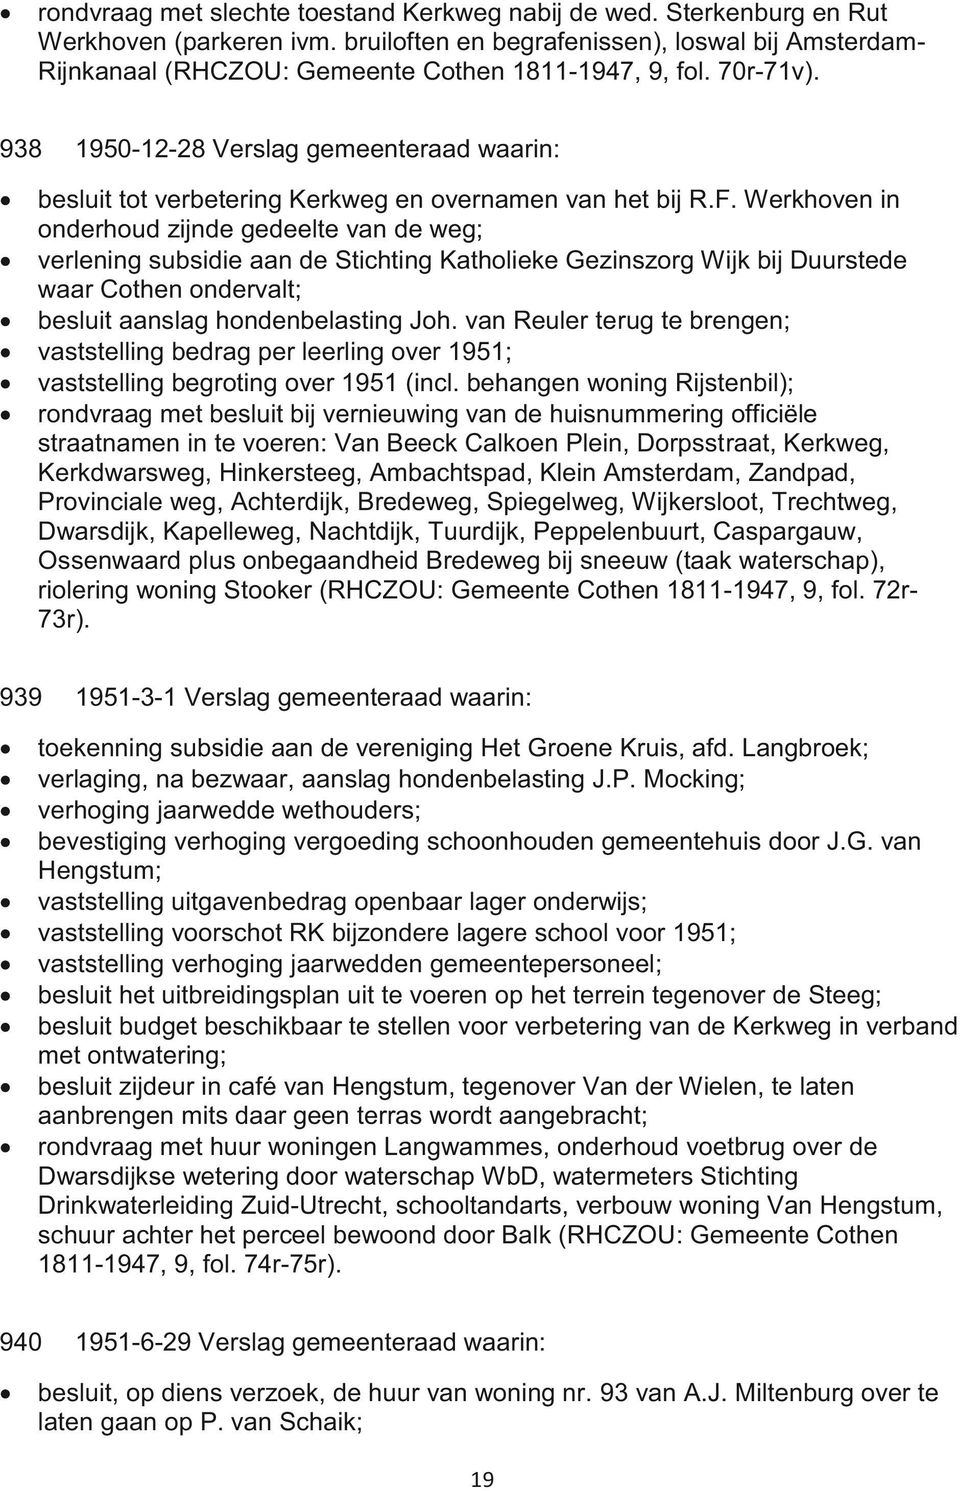 938 1950-12-28 Verslag gemeenteraad waarin: besluit tot verbetering Kerkweg en overnamen van het bij R.F.